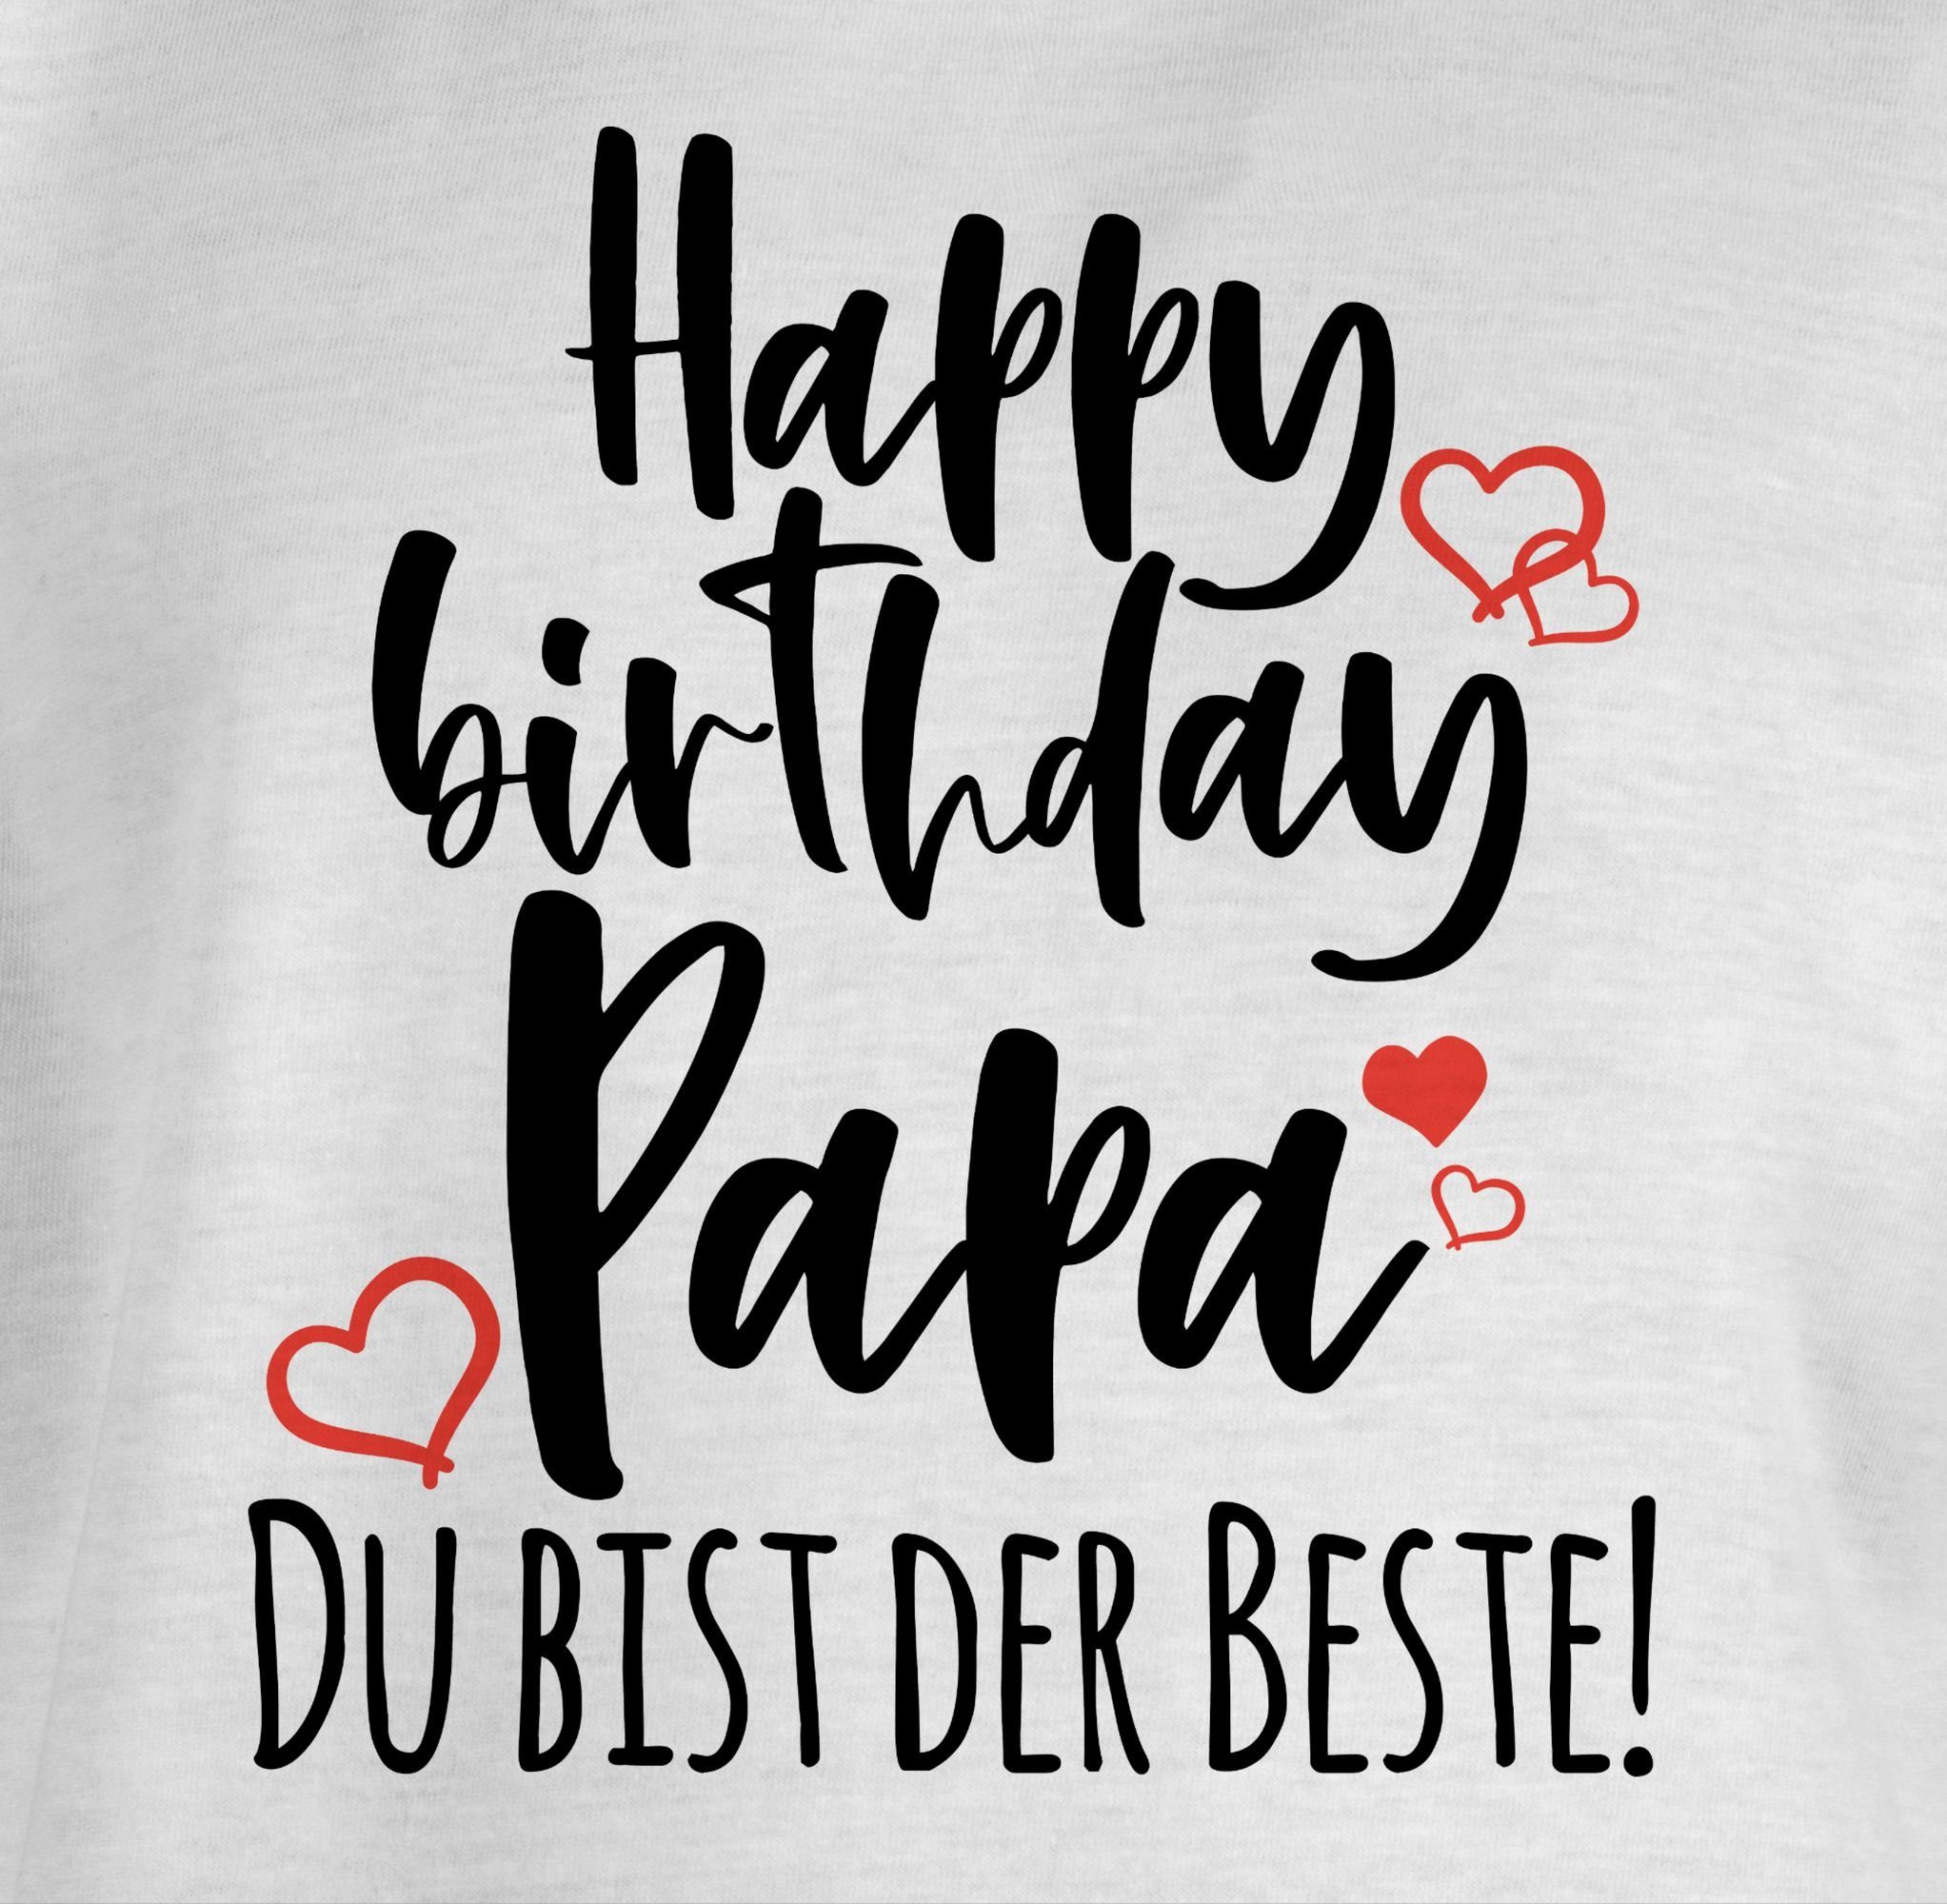 T-Shirt Happy Statement Birthday Shirtracer Kinder 2 Sprüche Papa Weiß